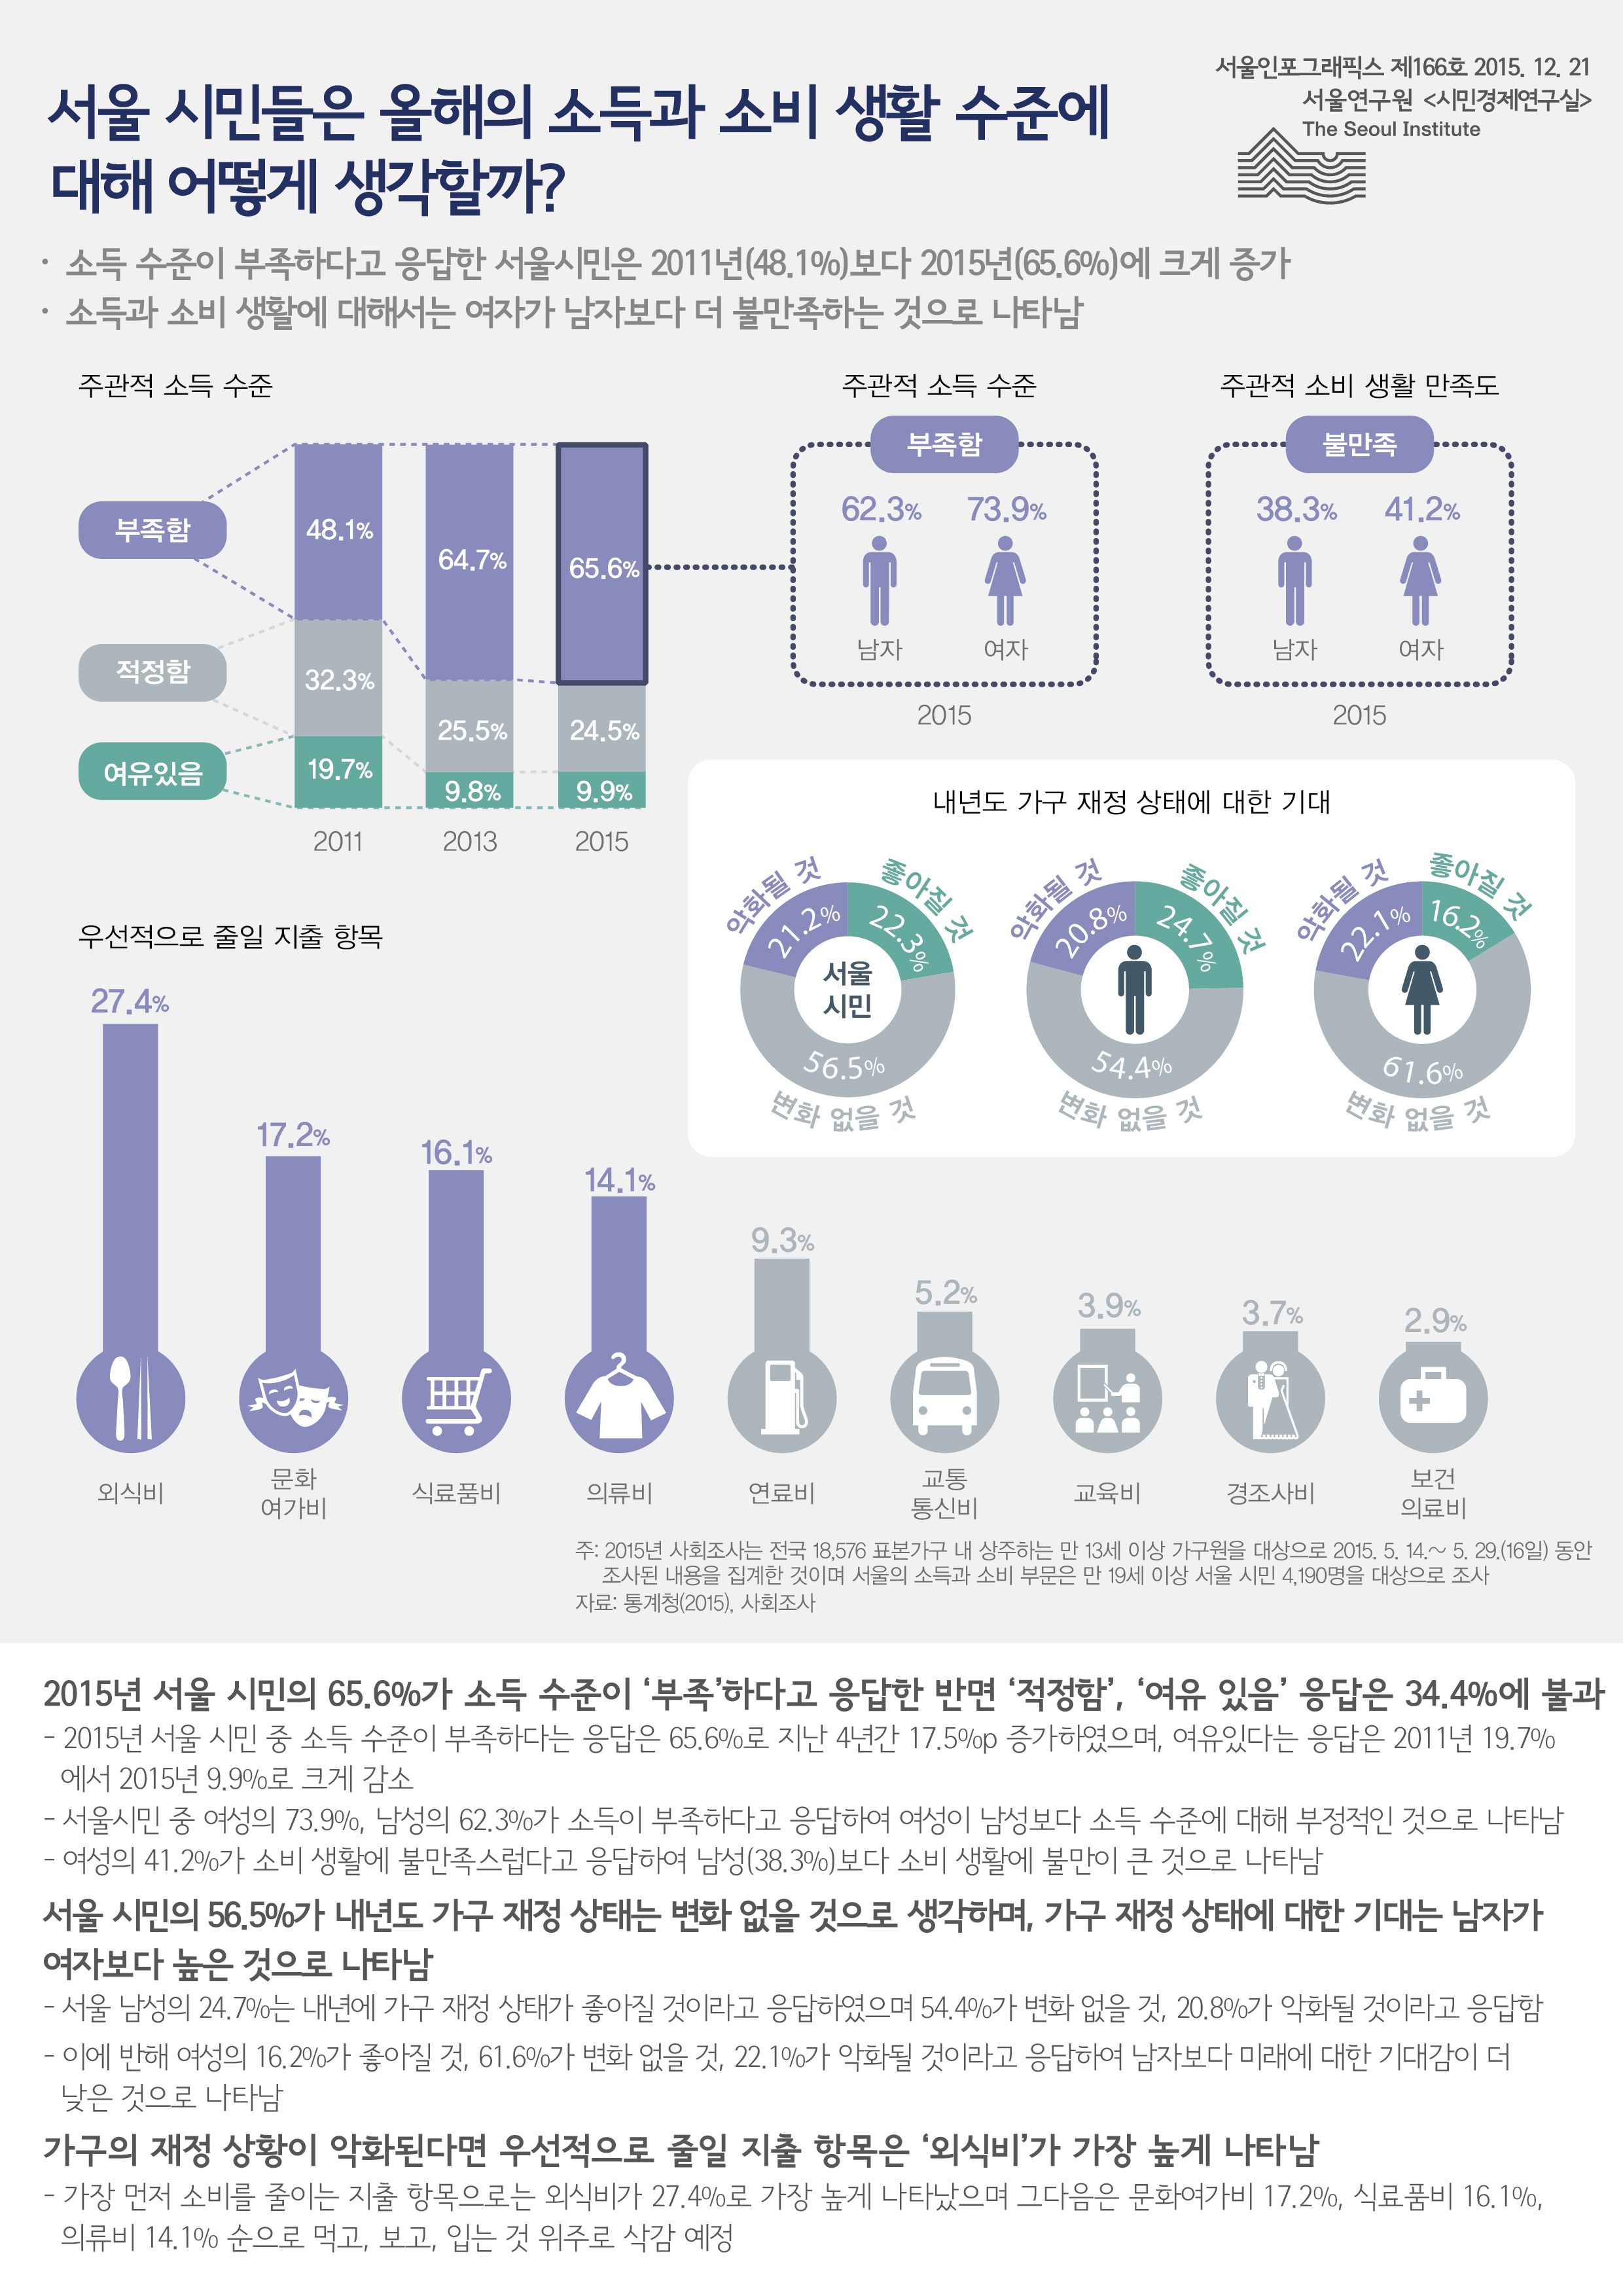 서울 시민들은 올해의 소득과 소비 생활 수준에 대해 어떻게 생각할까? 서울인포그래픽스 제 166호 2015년 12월 21일 소득 수준이 부족하다고 응답한 서울시민은 2011년보다 2015년에 48.1%에서 65.6%로 크게 증가함. 소득과 소비 생활에 대해서는 여자가 남자보다 더 불만족하는 것으로 나타남으로 정리될 수 있습니다. 인포그래픽으로 제공되는 그래픽은 하단에 표로 자세히 제공됩니다.